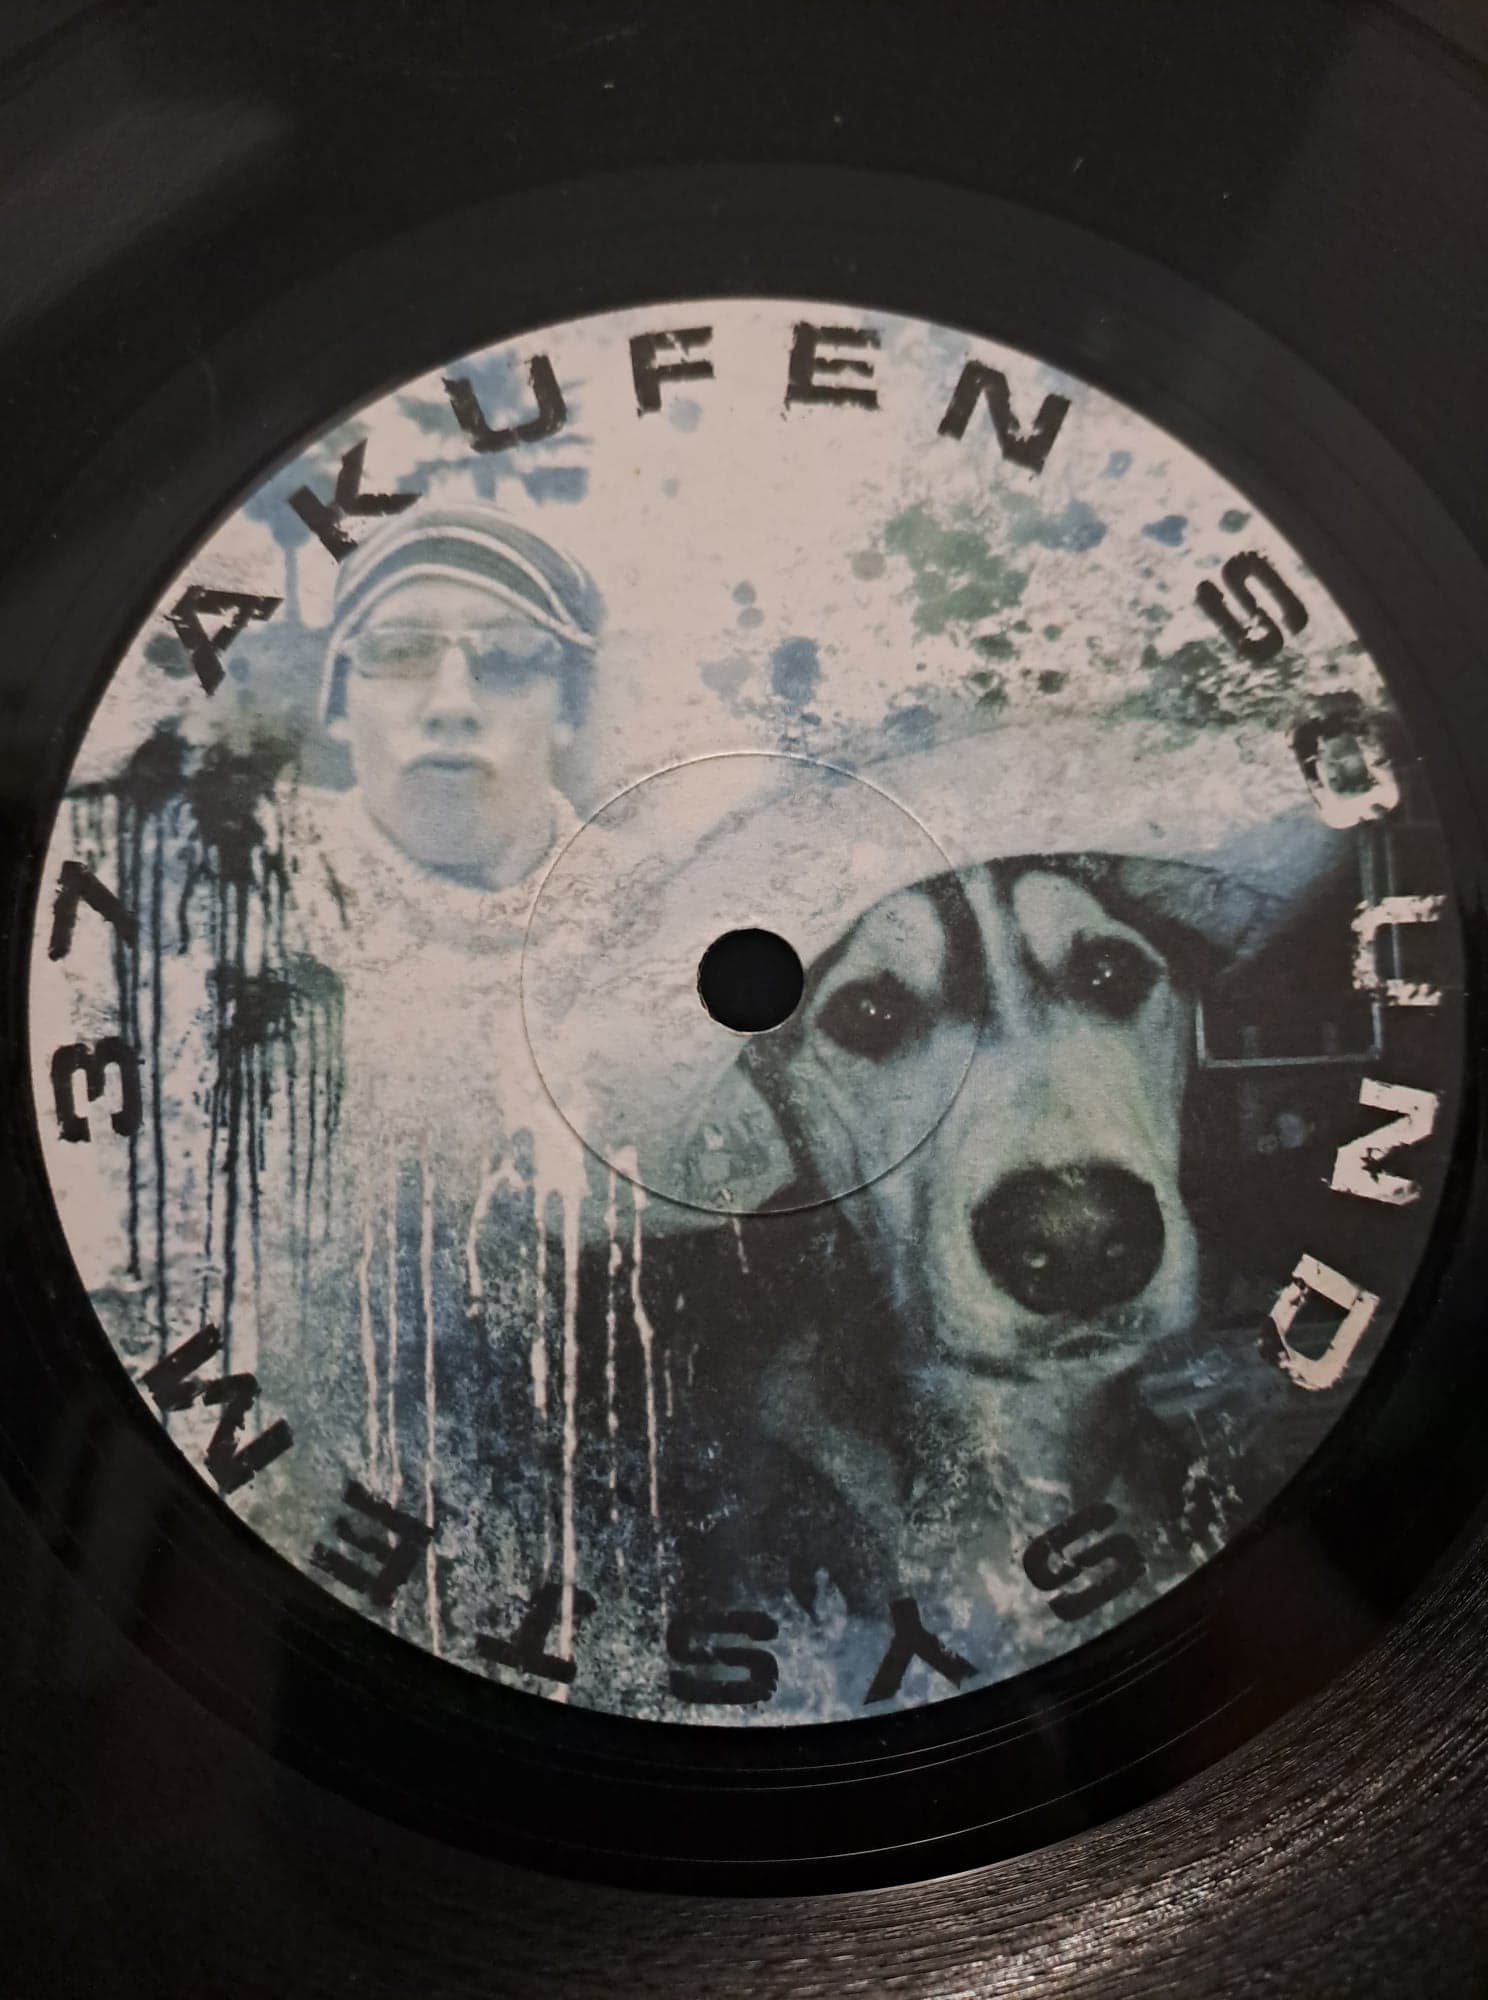 Akufen 01 - vinyle freetekno